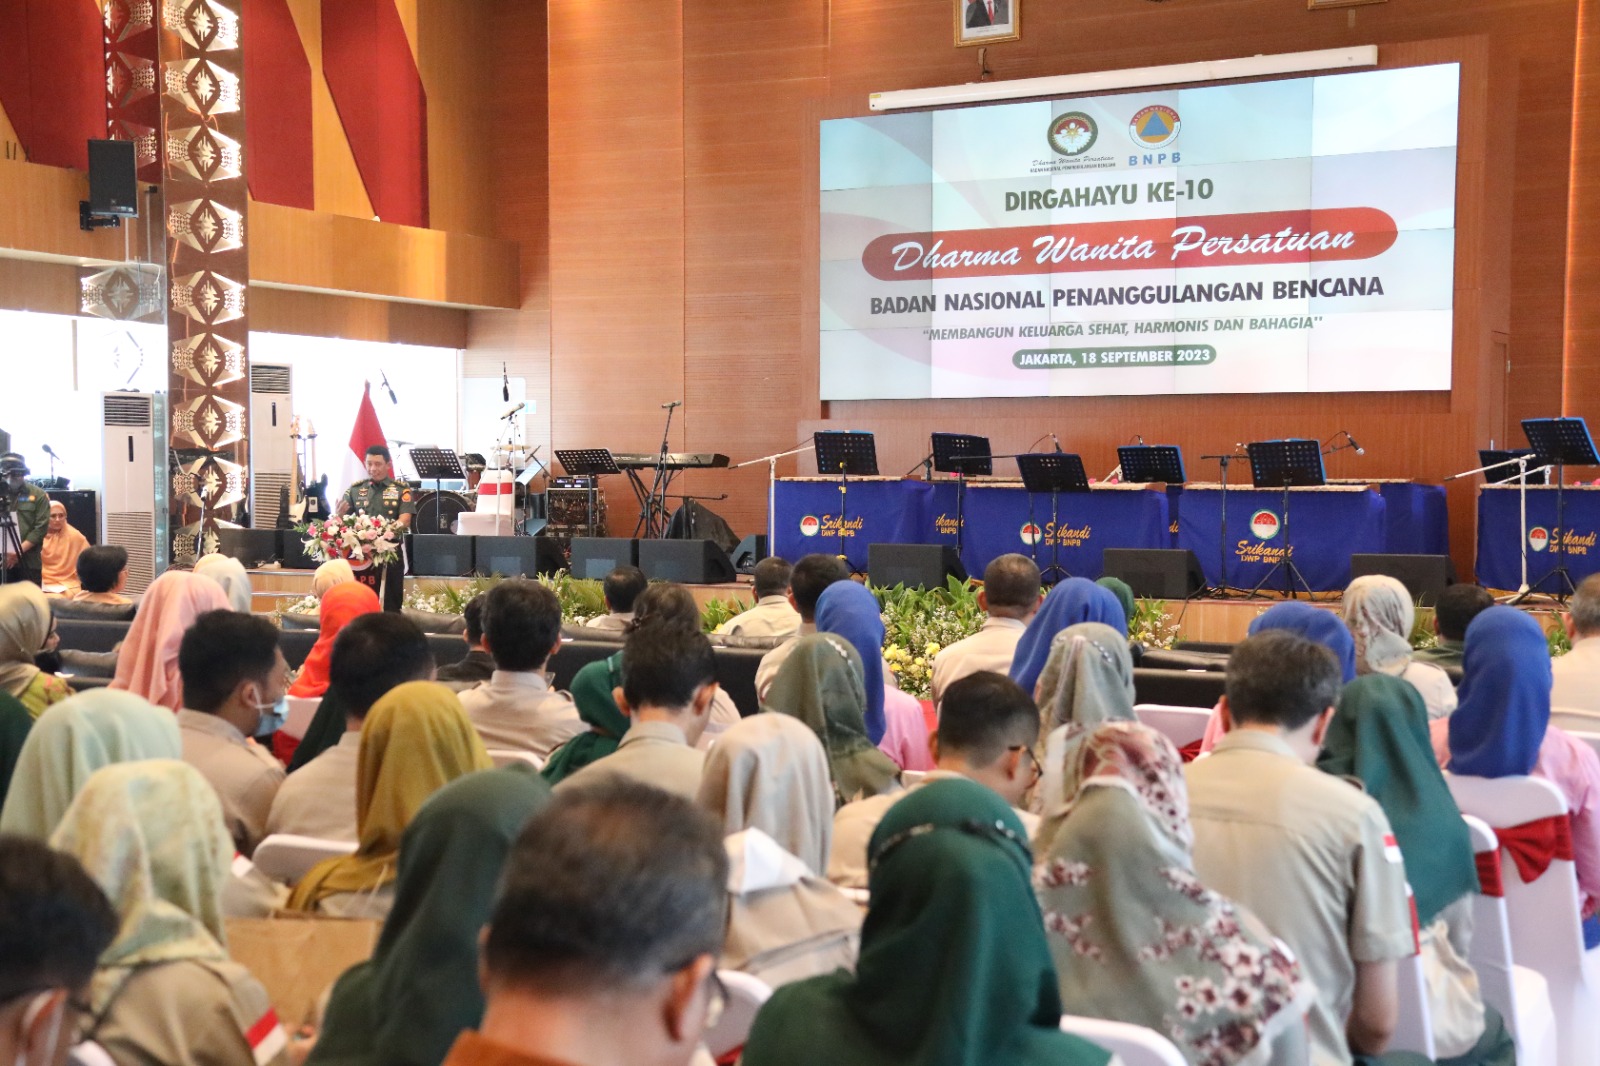 Suasana puncak perayaan Hari Ulang Tahun DWP BNPB ke 10 di Aula Sutopo Purwo Nugroho, Graha BNPB, Jakarta pada Senin (18/9).